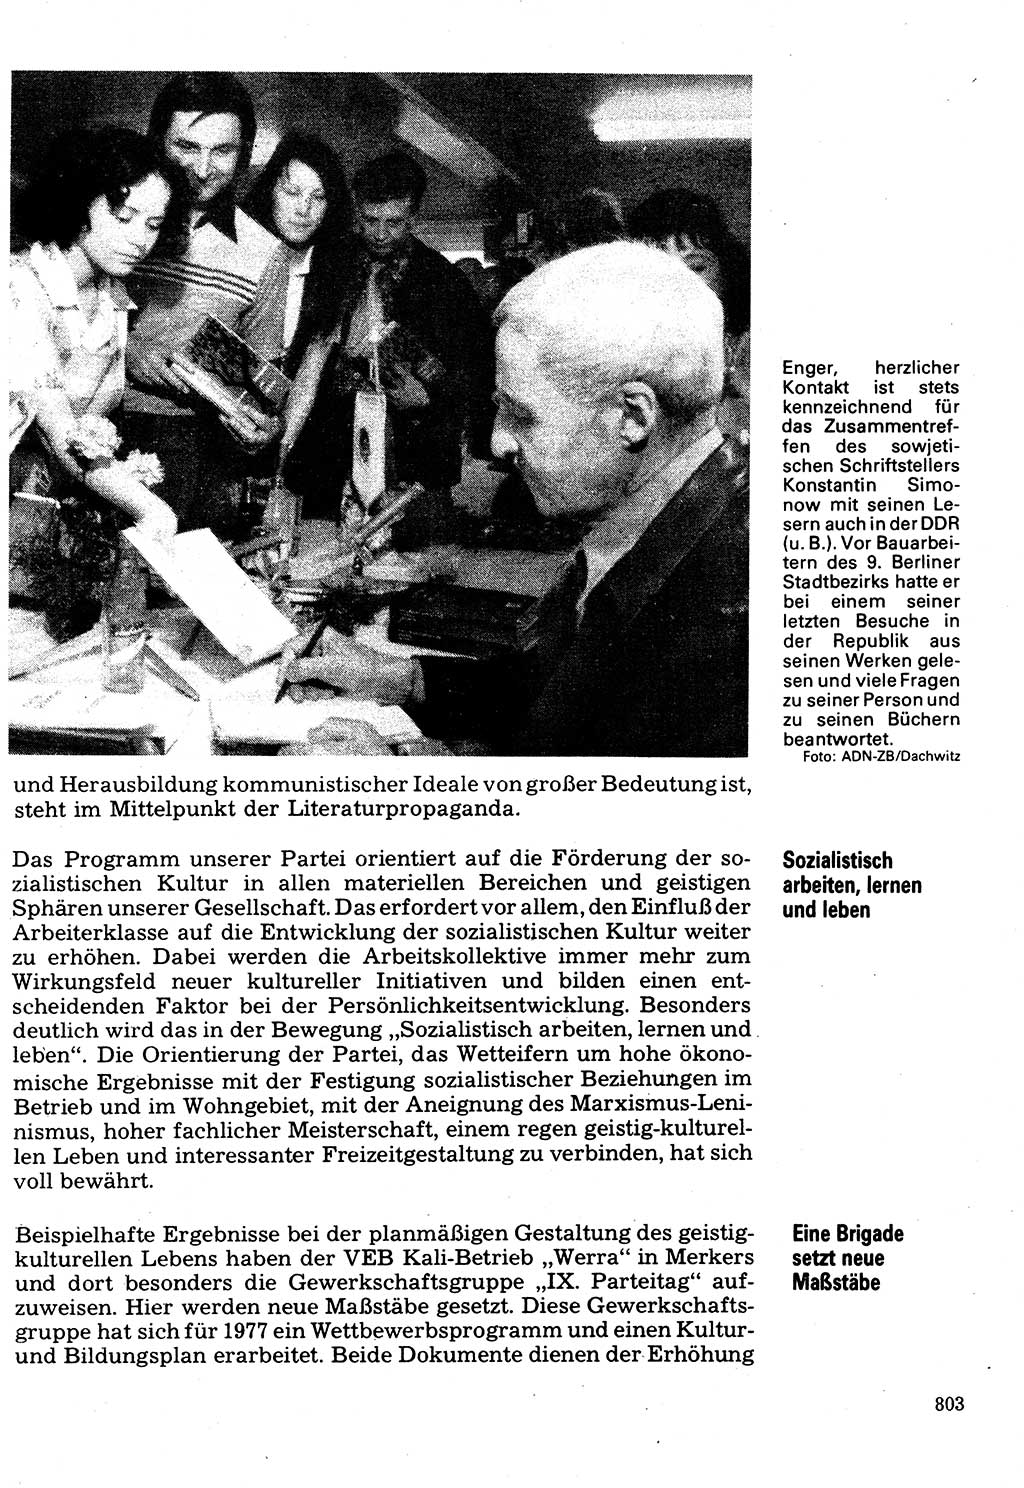 Neuer Weg (NW), Organ des Zentralkomitees (ZK) der SED (Sozialistische Einheitspartei Deutschlands) für Fragen des Parteilebens, 32. Jahrgang [Deutsche Demokratische Republik (DDR)] 1977, Seite 803 (NW ZK SED DDR 1977, S. 803)